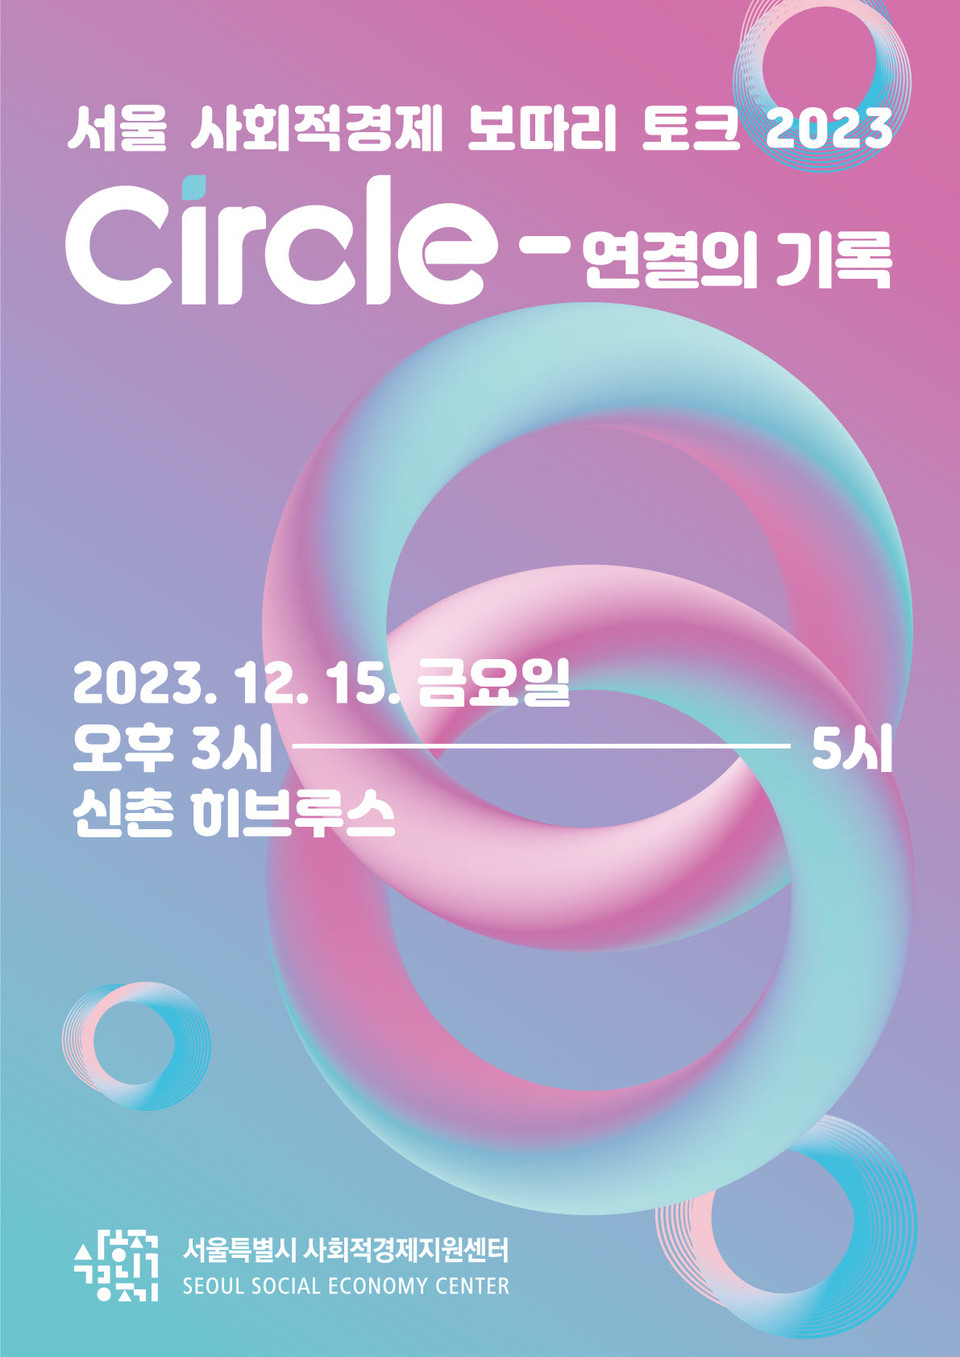 ▲ 서울 사회적경제 보따리 토크 2023 'Circle-연결의 기록'.